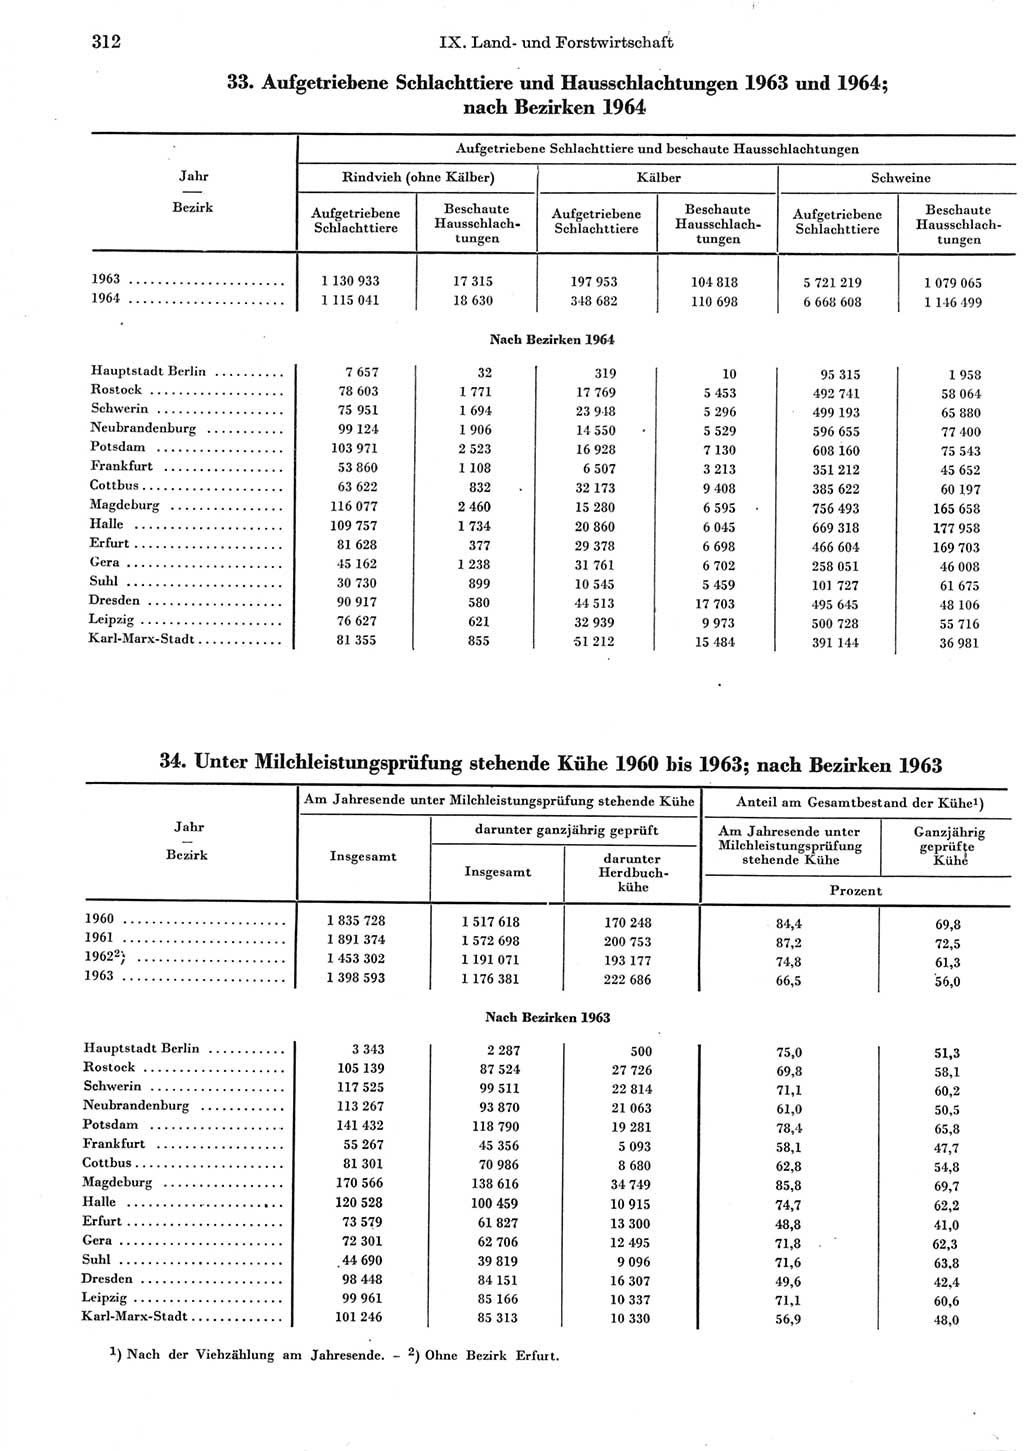 Statistisches Jahrbuch der Deutschen Demokratischen Republik (DDR) 1965, Seite 312 (Stat. Jb. DDR 1965, S. 312)